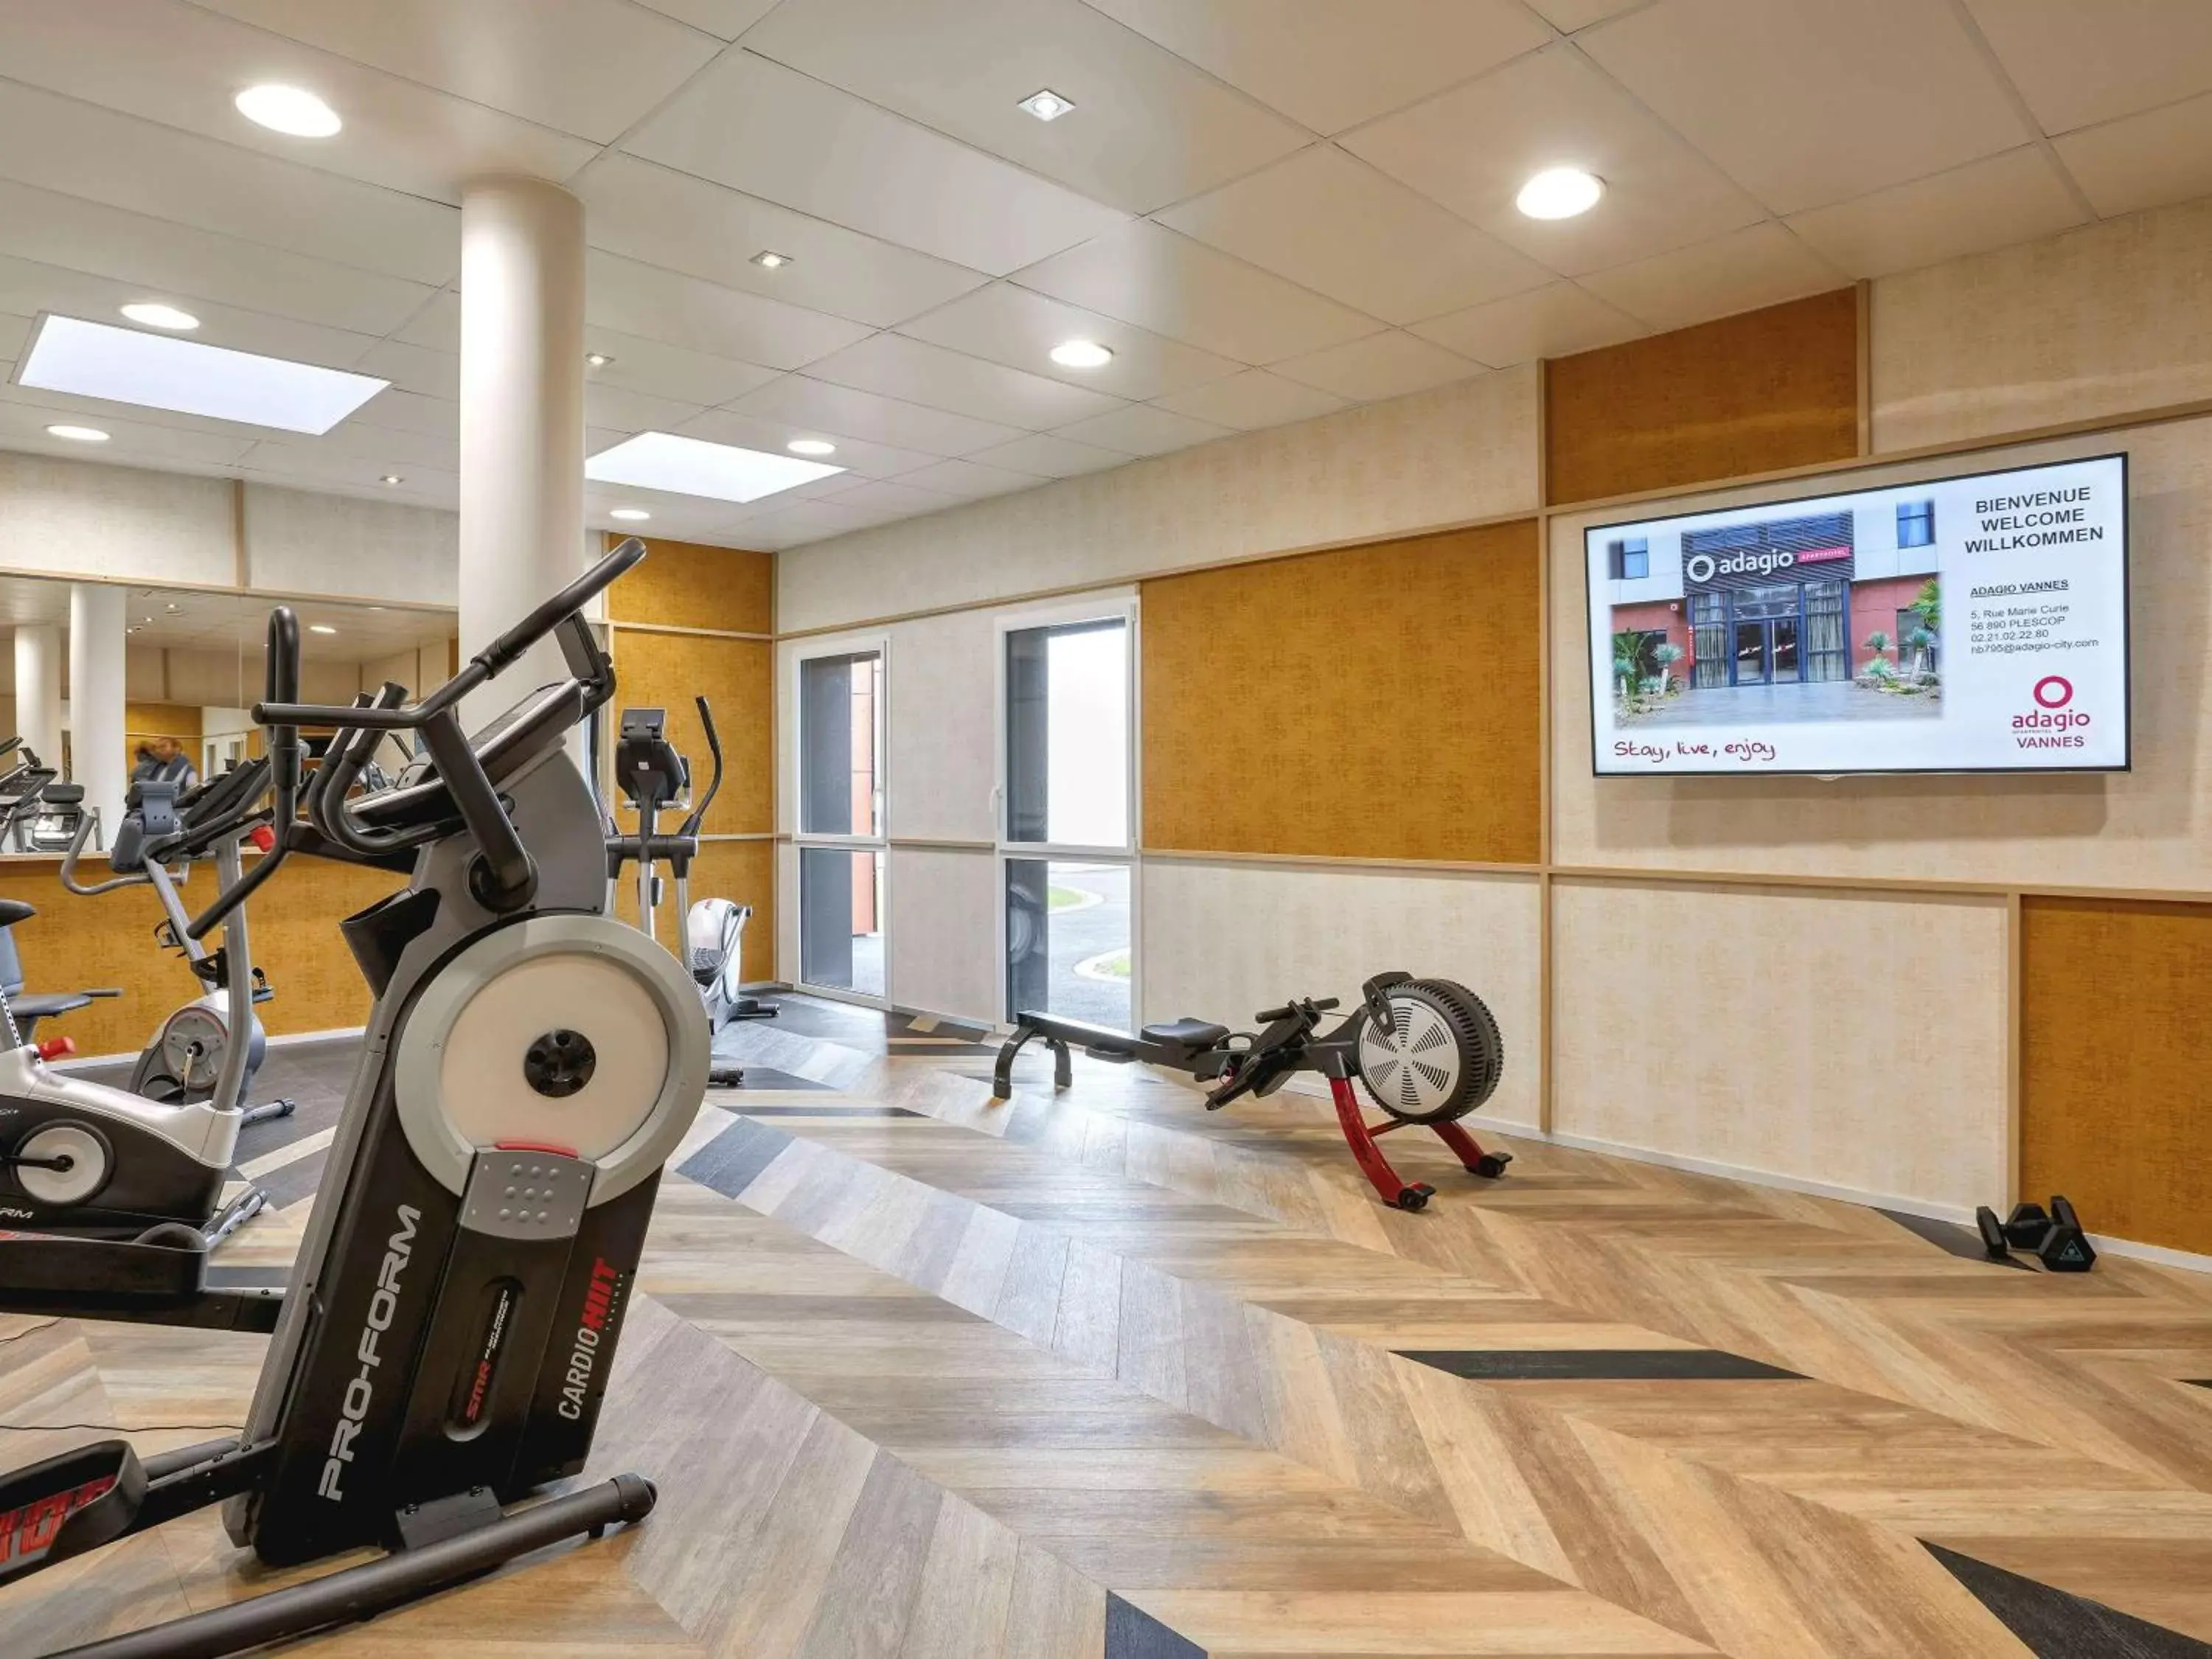 On site, Fitness Center/Facilities in Aparthotel & Spa Adagio Vannes